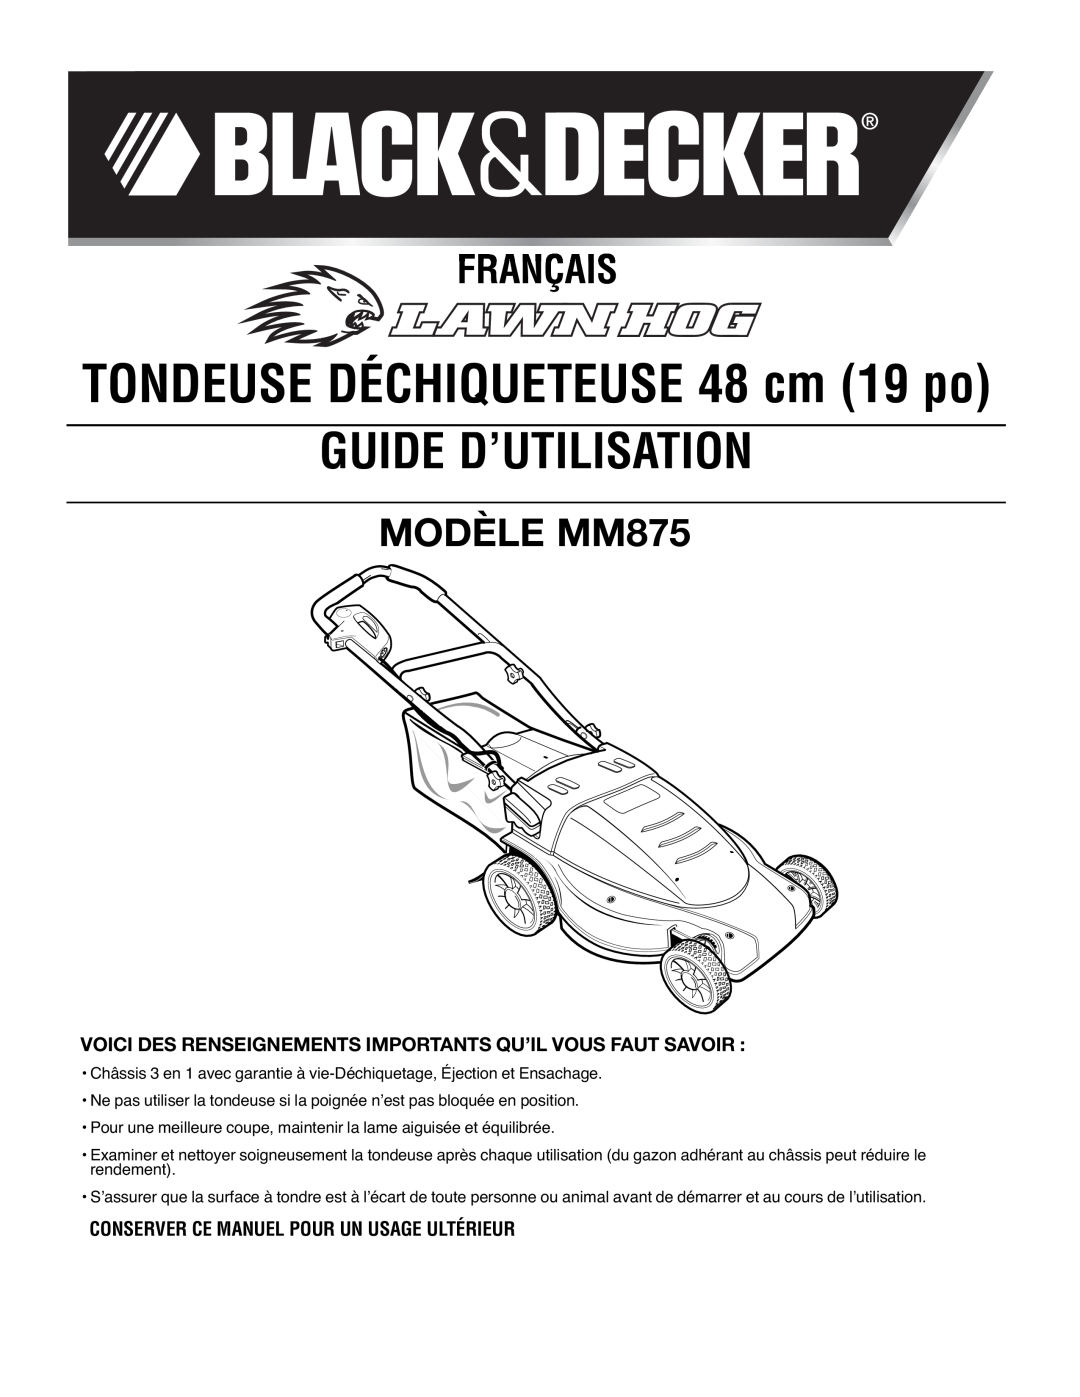 Black & Decker Guide D’Utilisation, Français, MODÈLE MM875, Voici Des Renseignements Importants Qu’Il Vous Faut Savoir 